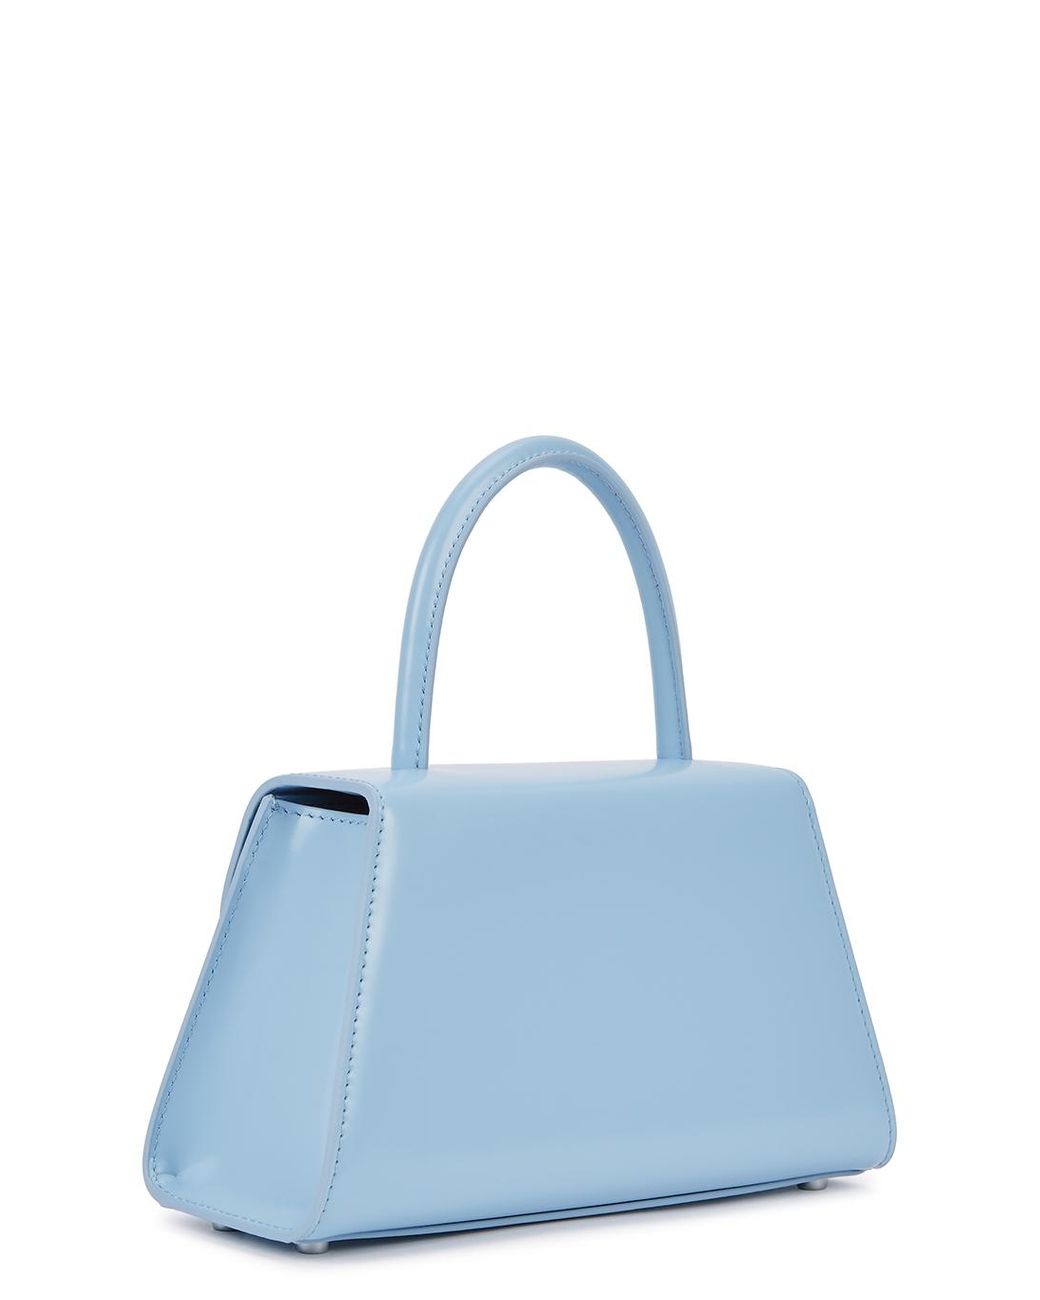 ESBEDA Light Blue Color Satchel Box Bag For Women